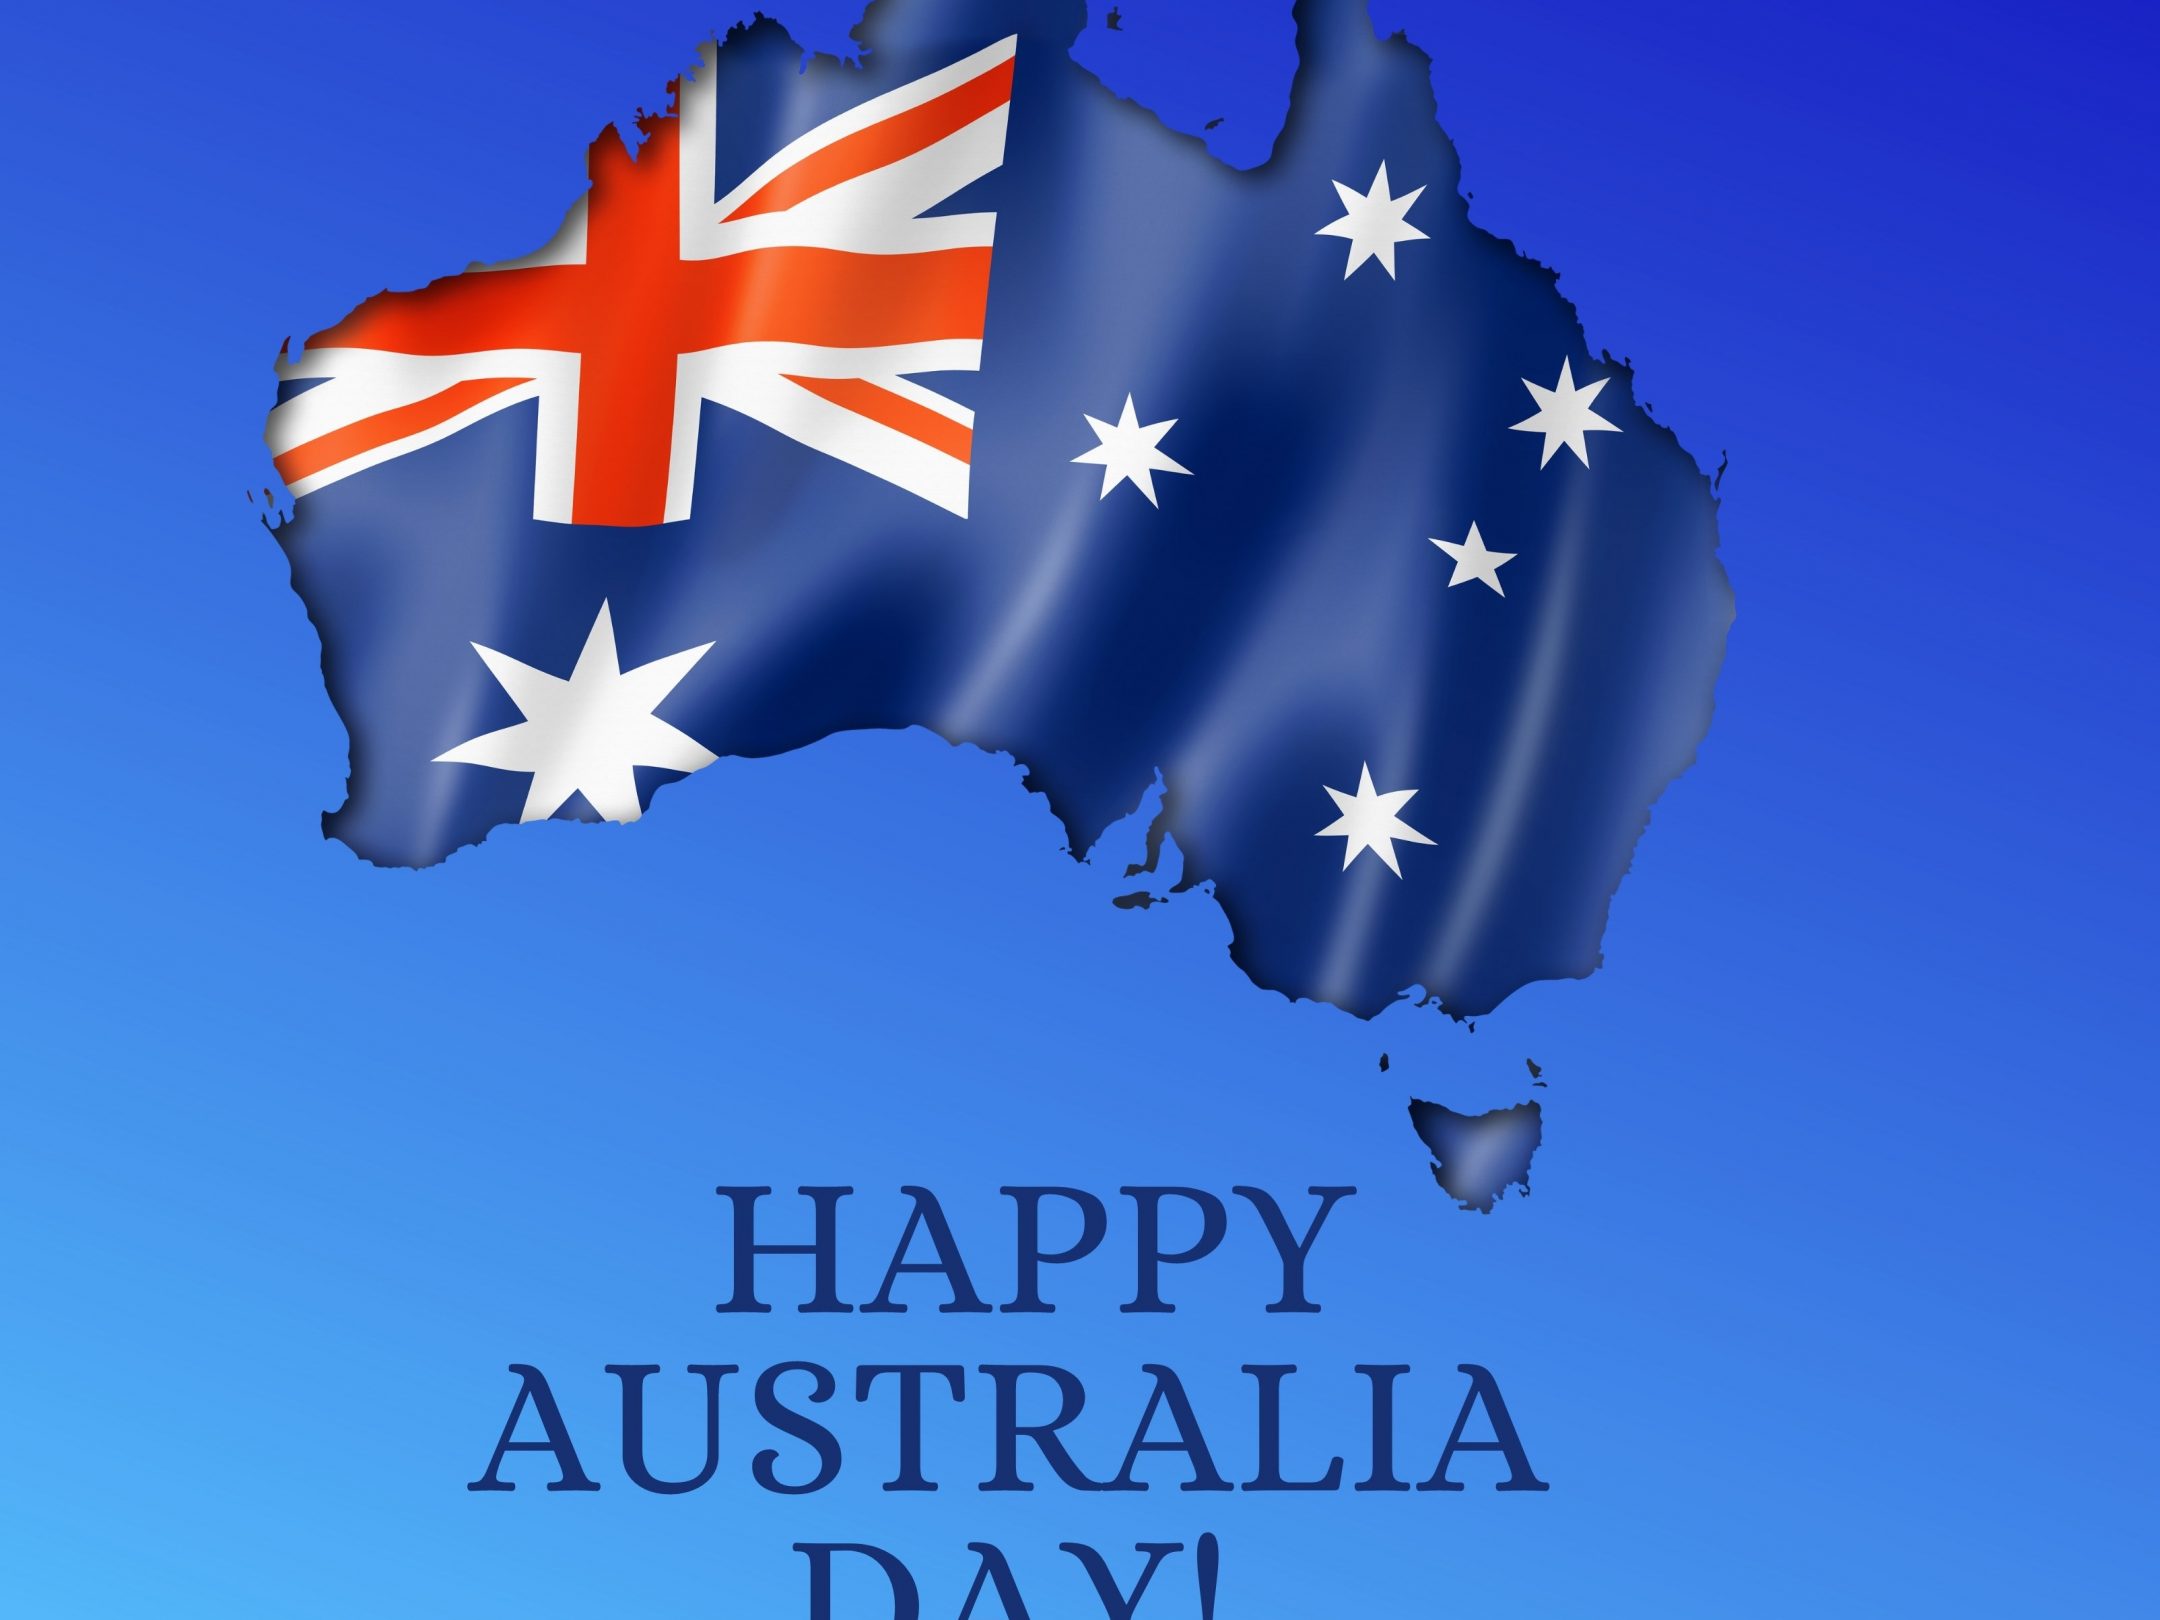 2160x1620 iPad wallpaper 4k Happy Australia Day iPad Wallpaper 2160x1620 pixels resolution